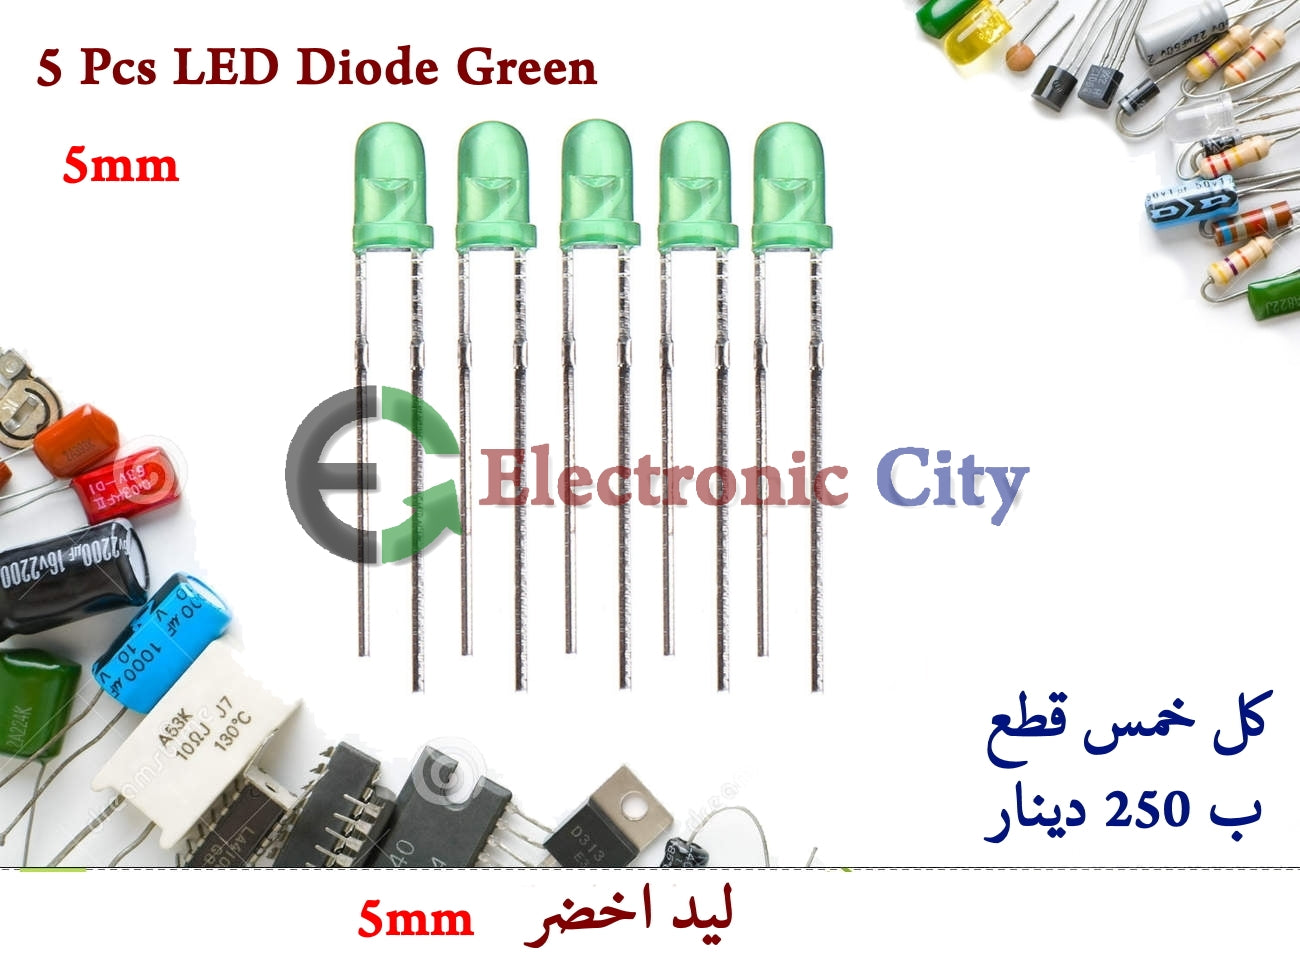 5 Pcs LED Diode Green 5mm